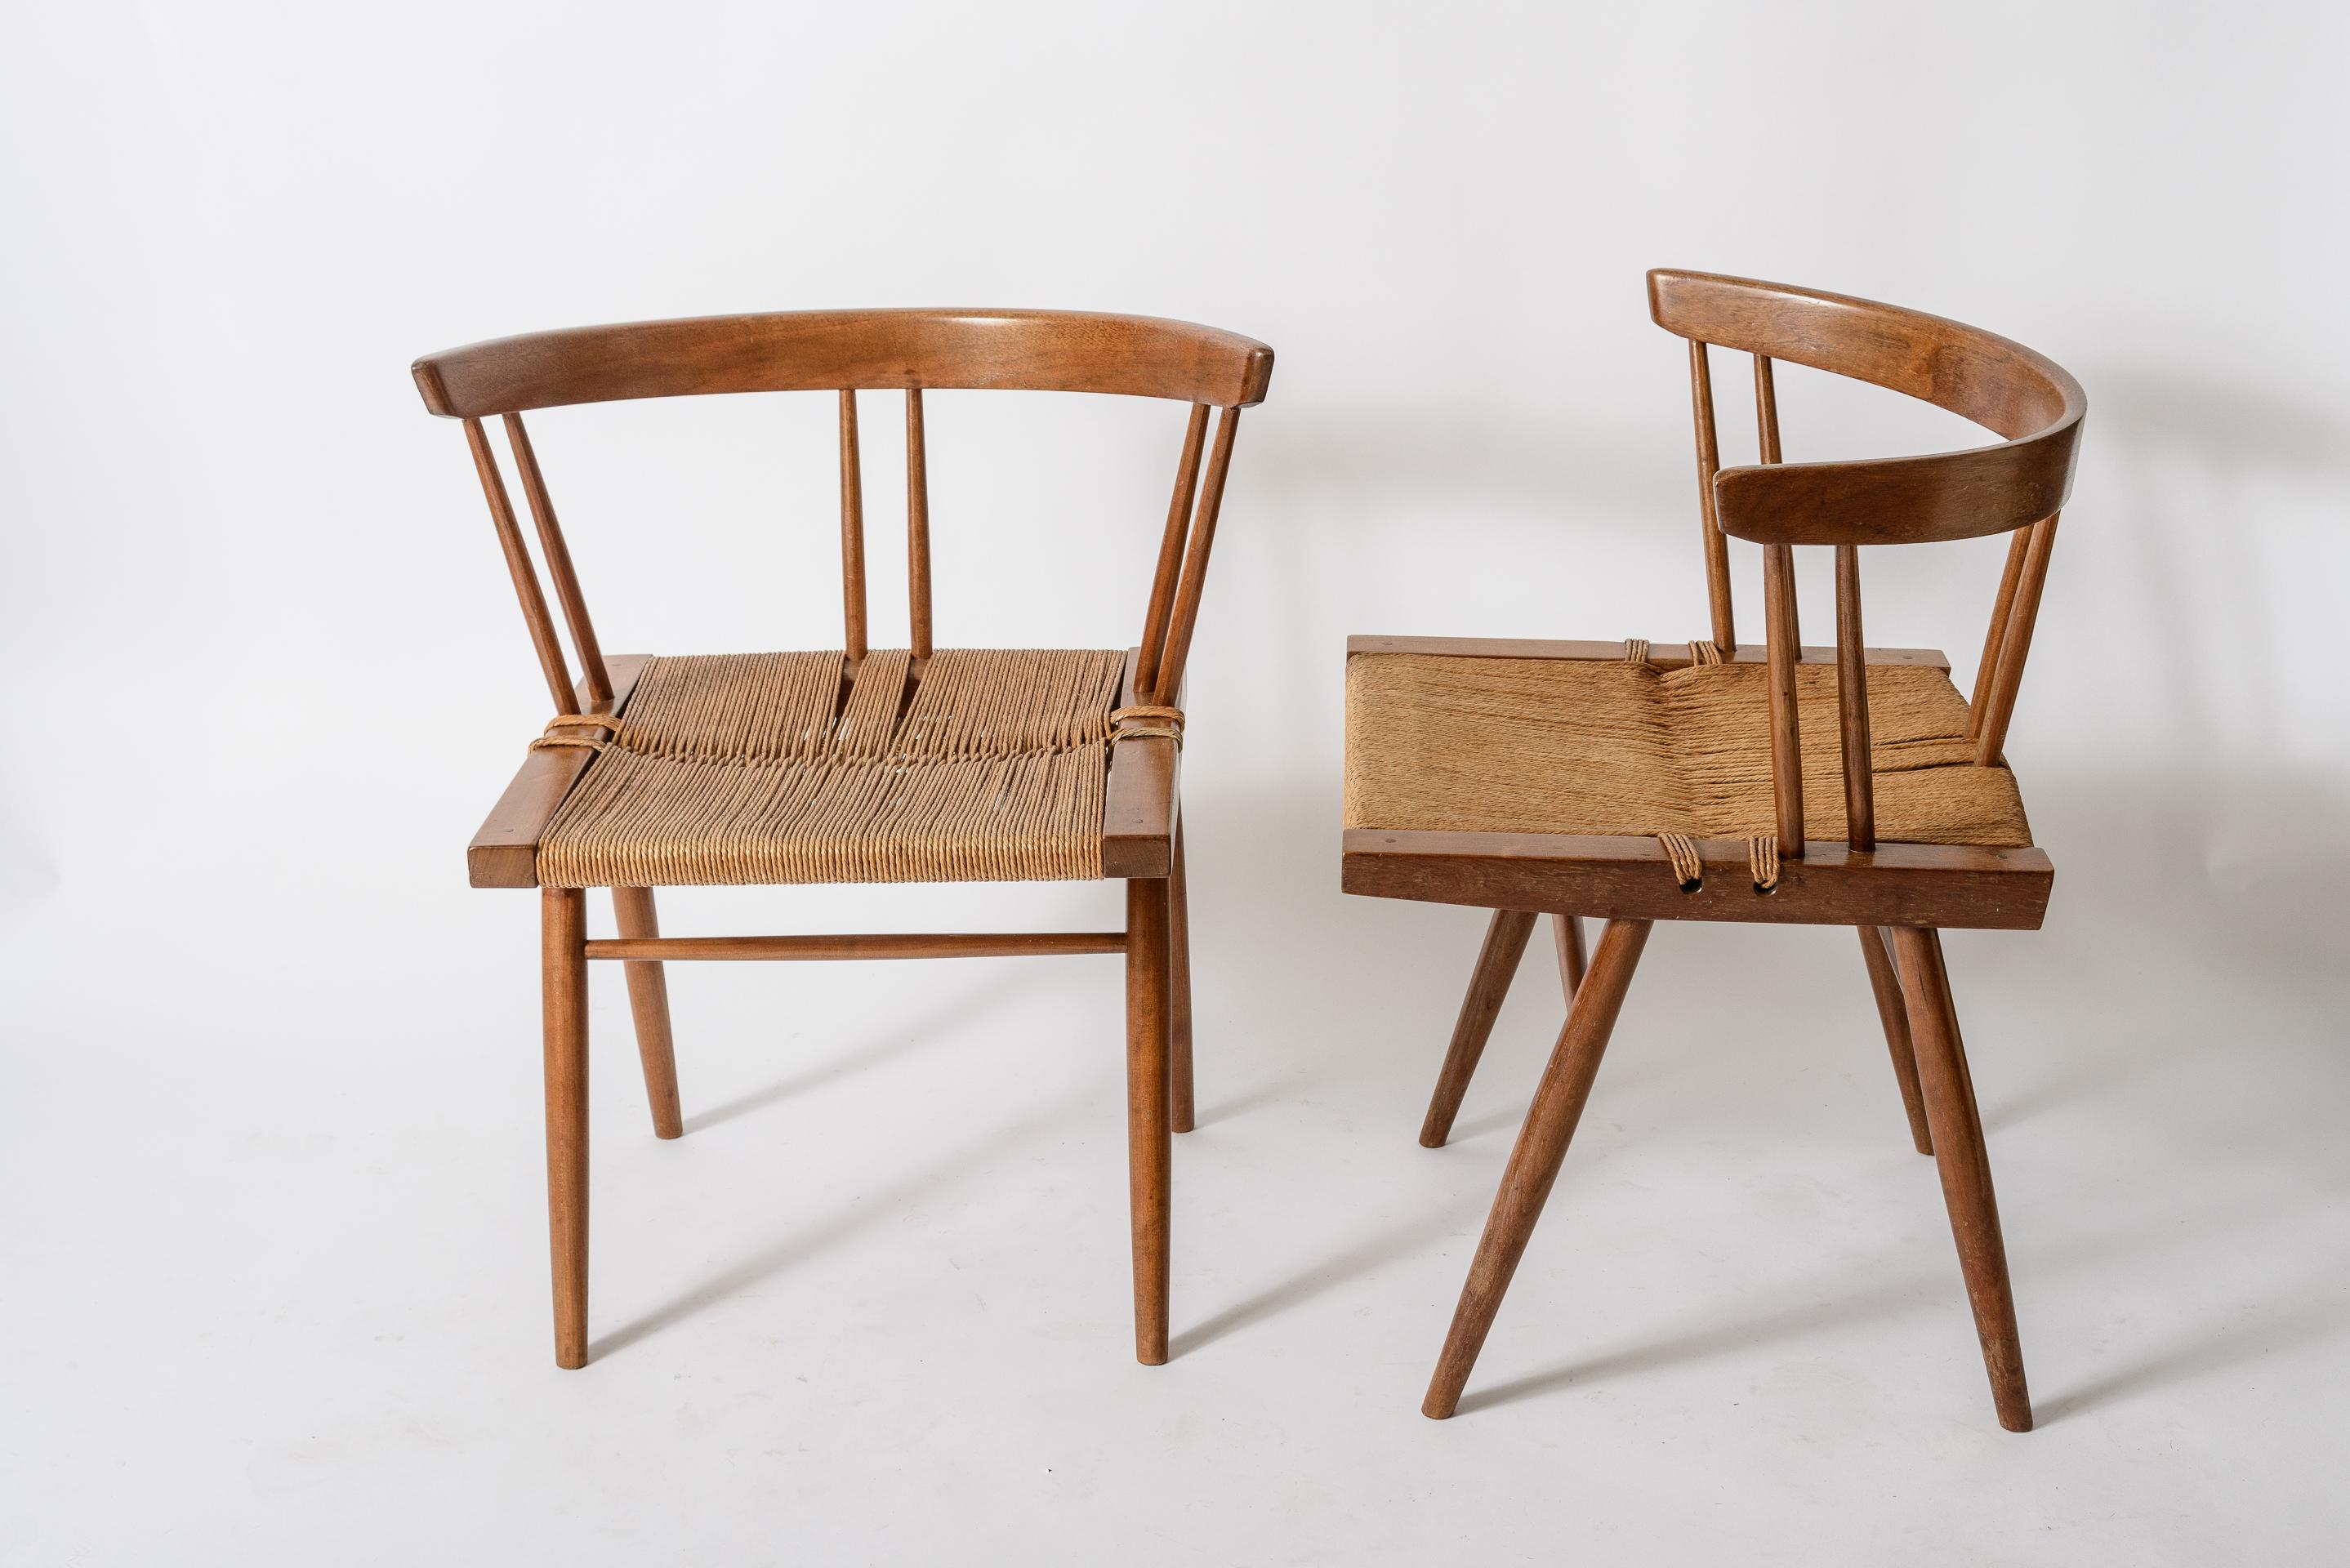 Ein Satz von 4 Grass Seat Chairs von George Nakashima.
Schöne Patina auf den Holz- und Grassitzen.
Name des ursprünglichen Besitzers verfügbar